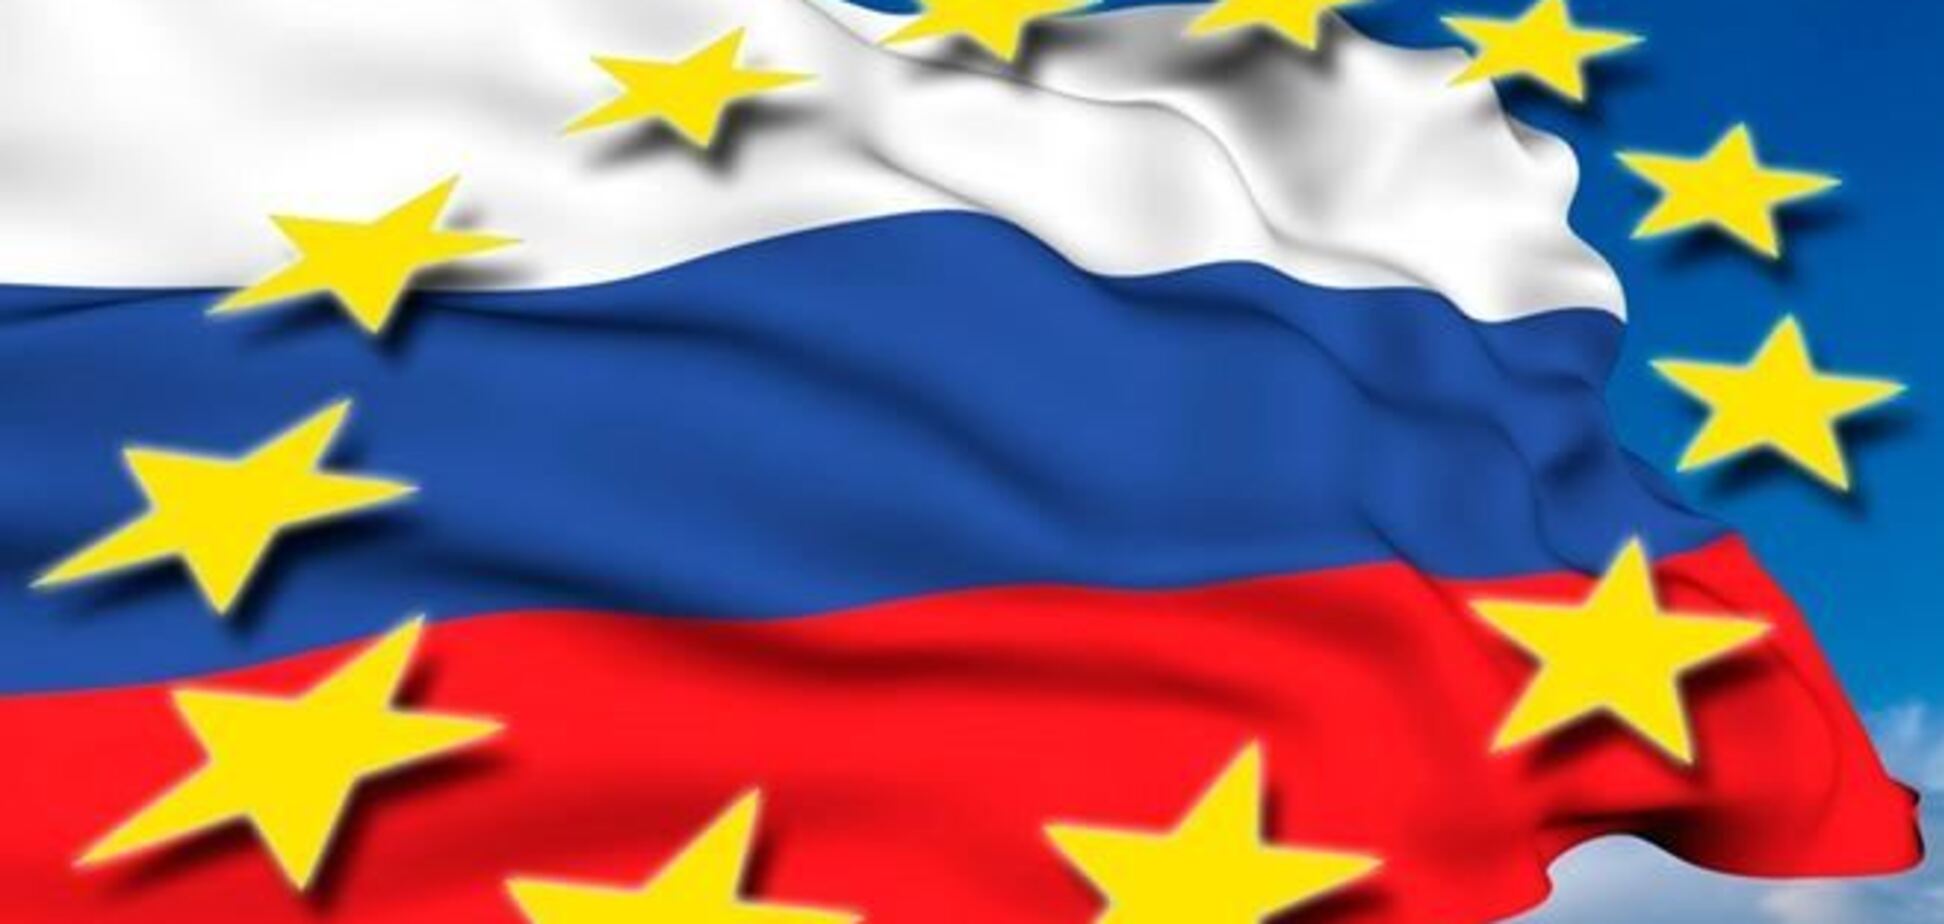 Европа обвинила Россию в невыполнении норм ВТО